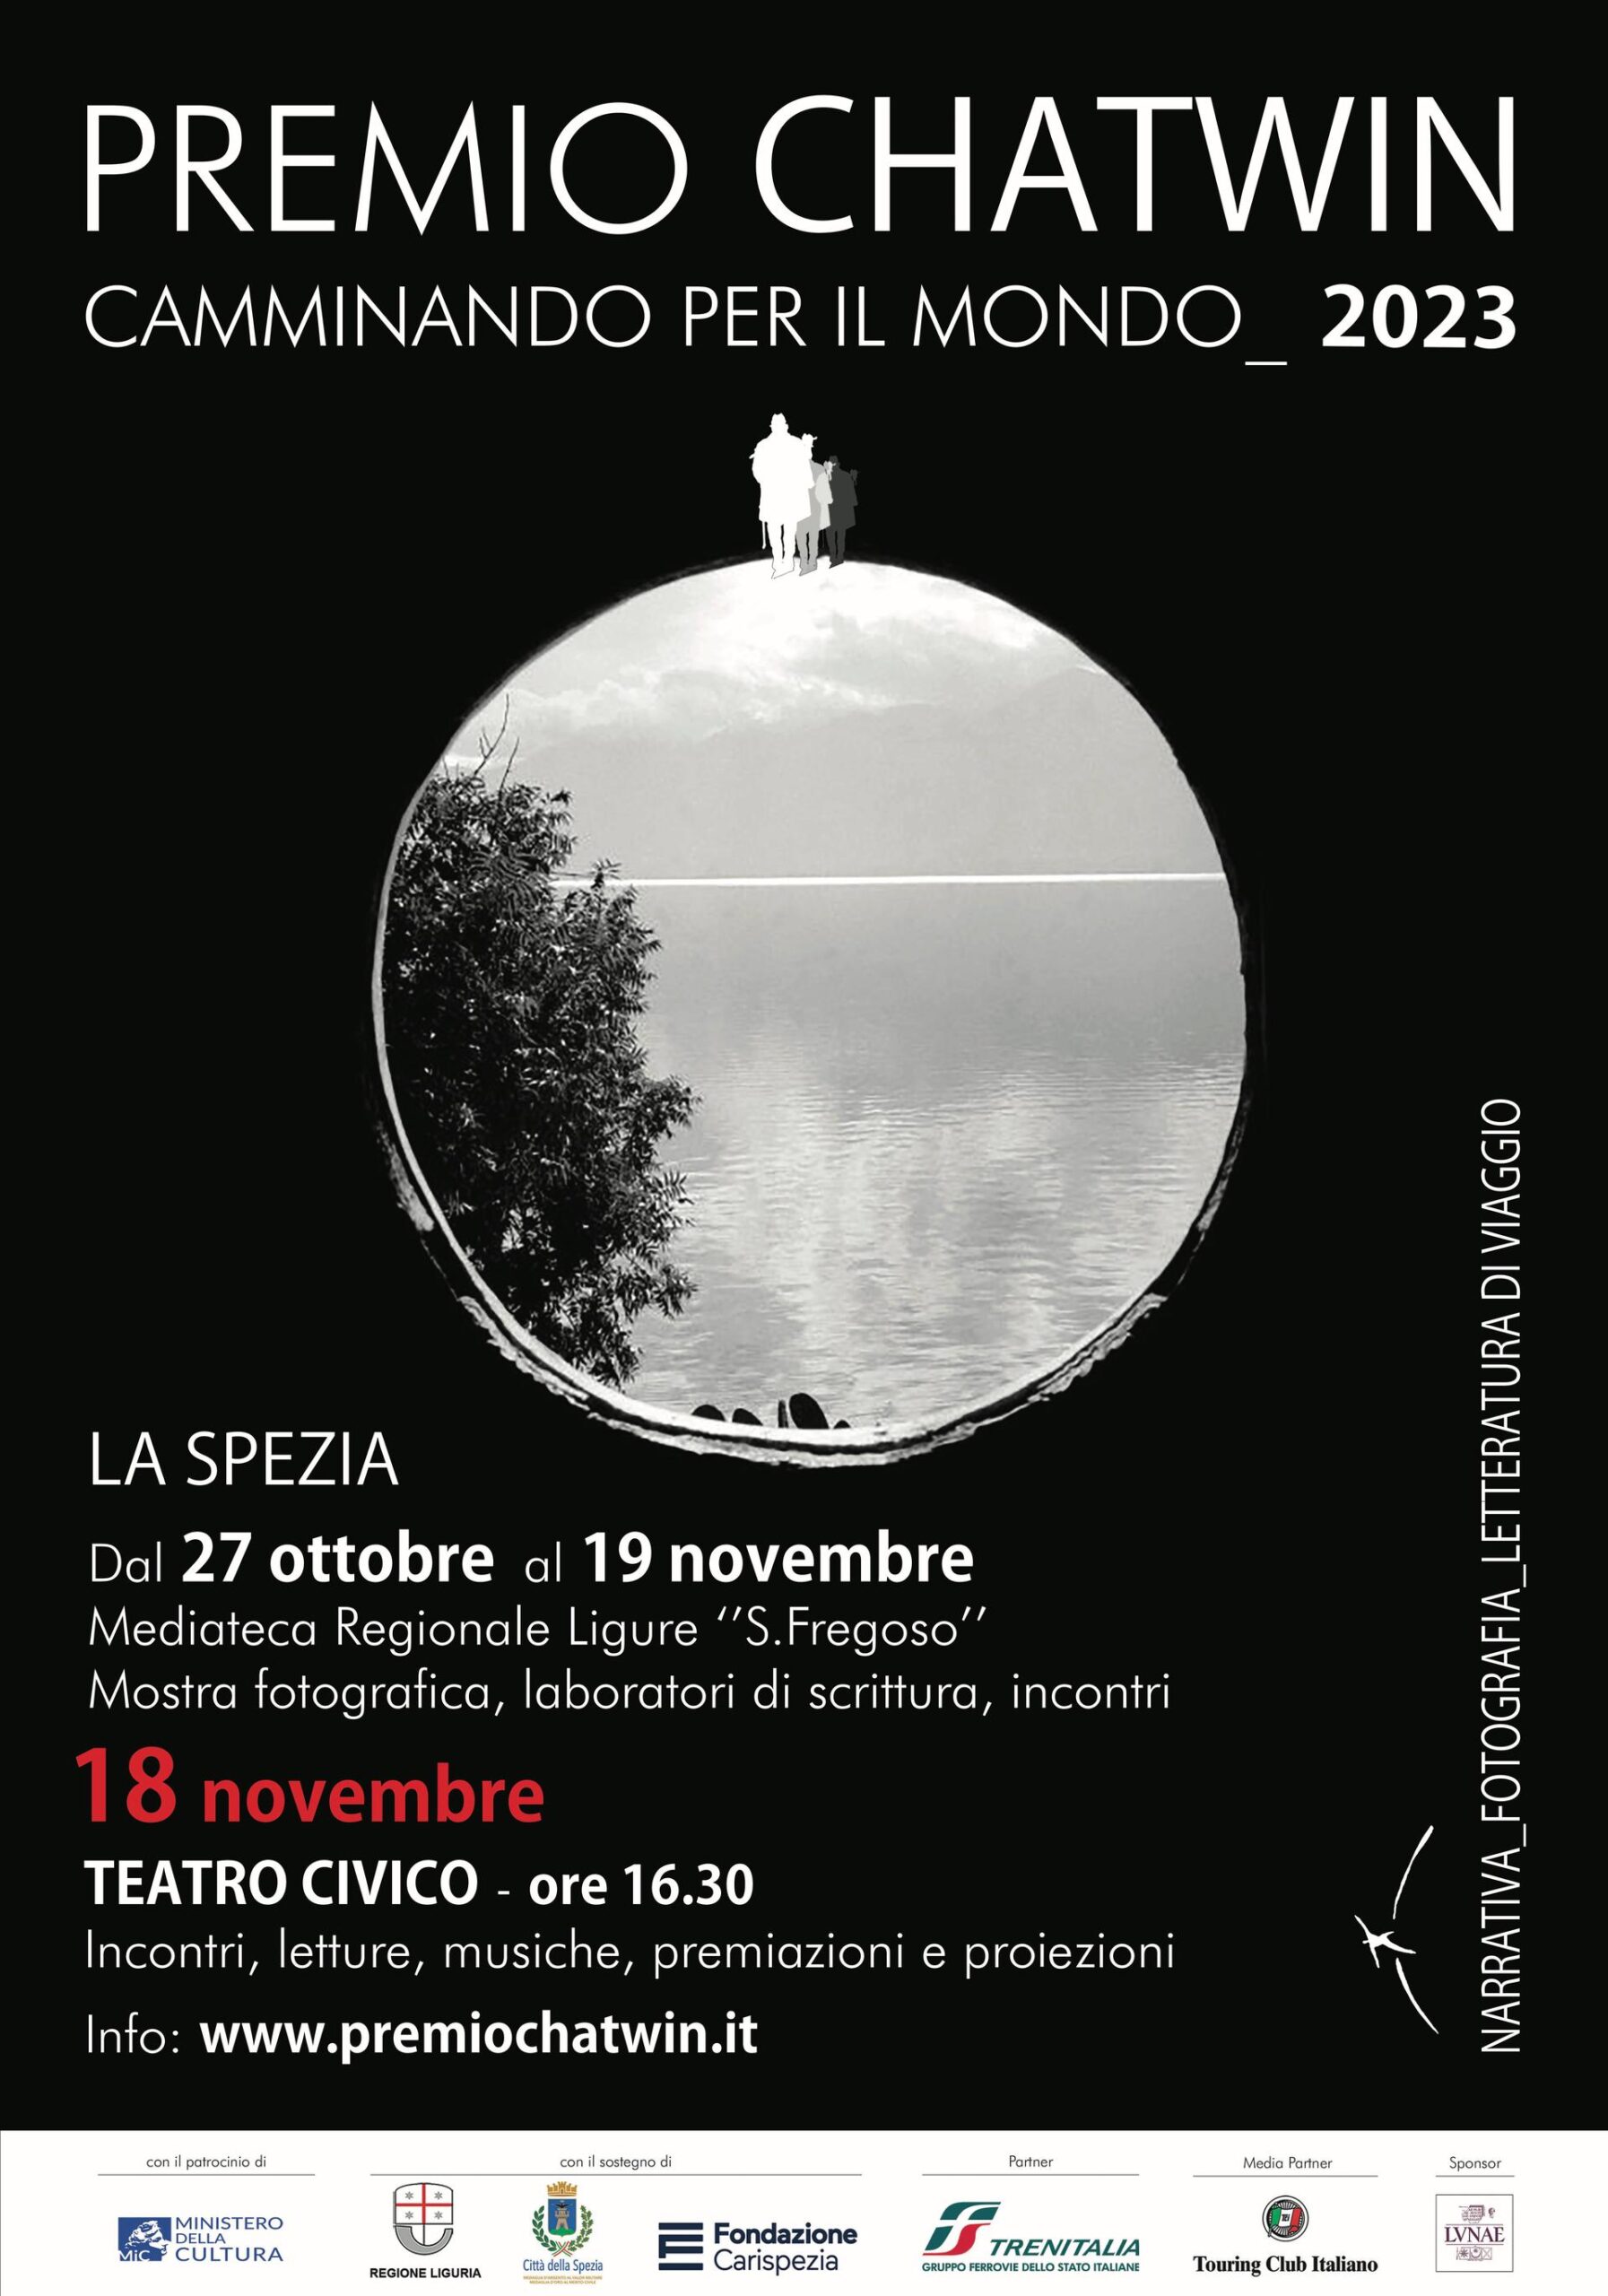 <strong>Premio Chatwin 2023: programma degli eventi e cerimonia finale (17-18 novembre, La Spezia)</strong>